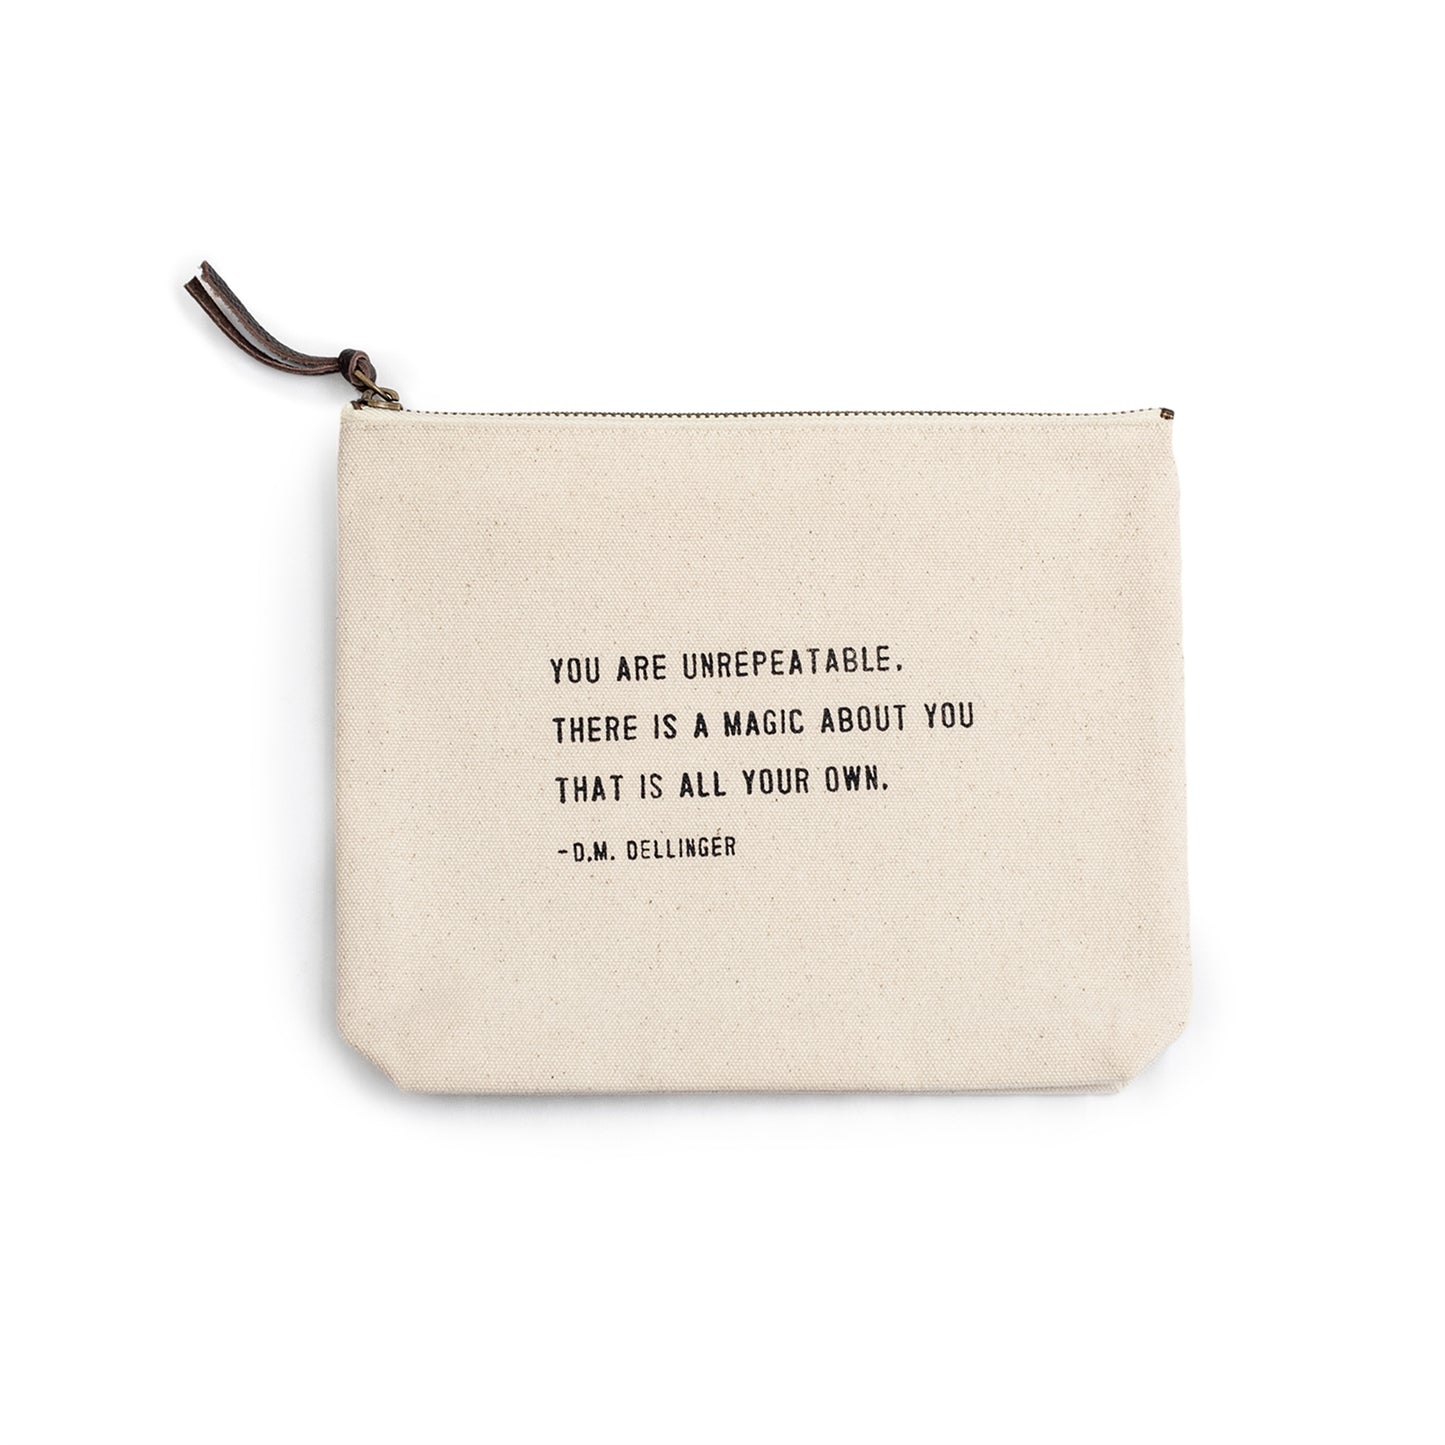 You Are Unrepeatable (D.M. Dellinger) Canvas Zip Bag